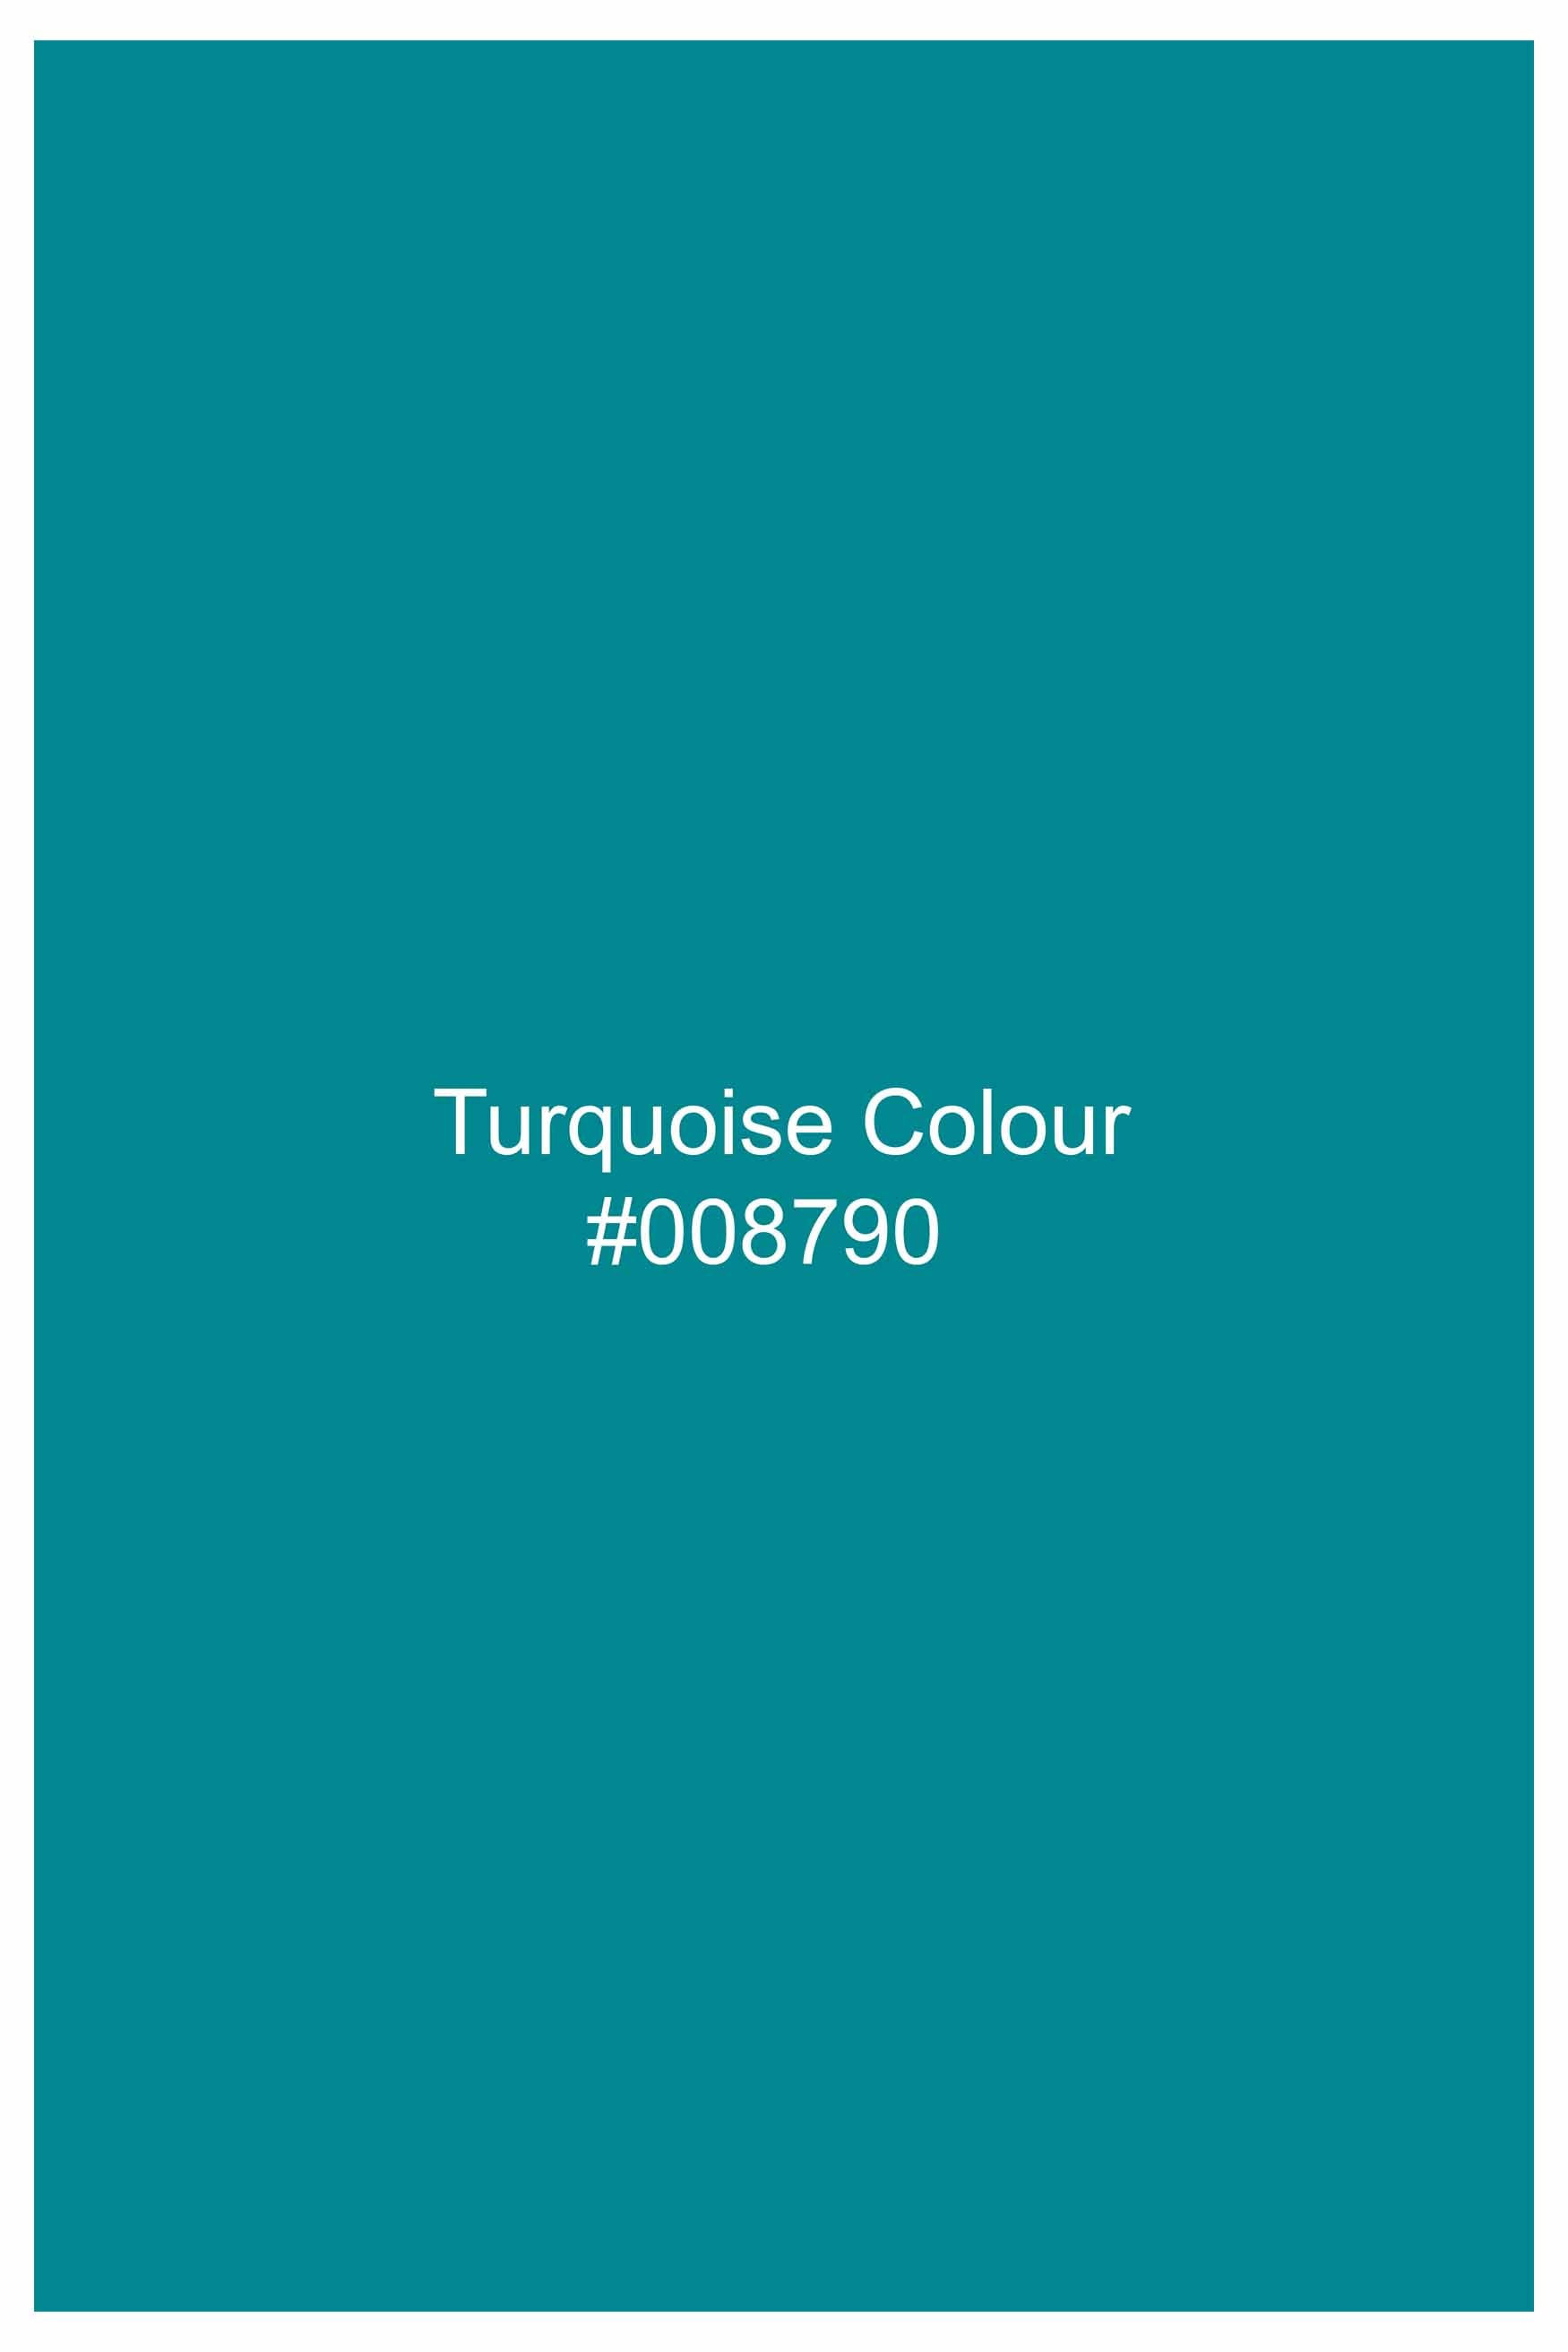 Turquoise Blue Hand Painted Luxurious Linen Designer Shirt 6430-BLK-ART-38, 6430-BLK-ART-H-38, 6430-BLK-ART-39, 6430-BLK-ART-H-39, 6430-BLK-ART-40, 6430-BLK-ART-H-40, 6430-BLK-ART-42, 6430-BLK-ART-H-42, 6430-BLK-ART-44, 6430-BLK-ART-H-44, 6430-BLK-ART-46, 6430-BLK-ART-H-46, 6430-BLK-ART-48, 6430-BLK-ART-H-48, 6430-BLK-ART-50, 6430-BLK-ART-H-50, 6430-BLK-ART-52, 6430-BLK-ART-H-52